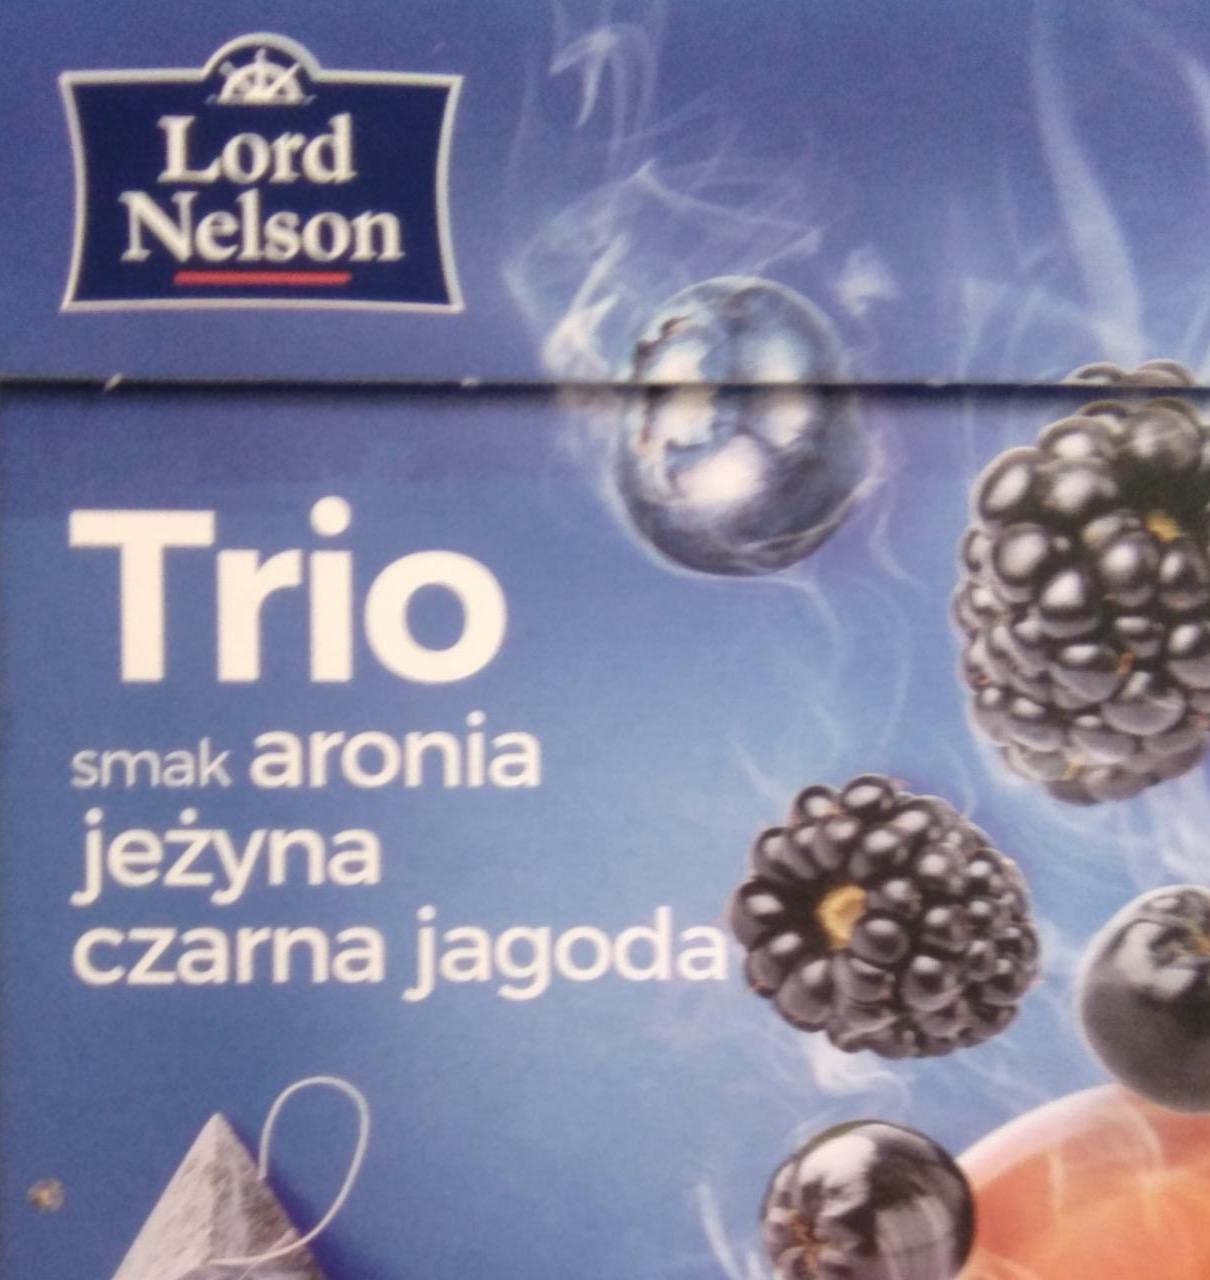 Zdjęcia - Trio aronia jeżyna czarna jagoda Lord Nelson